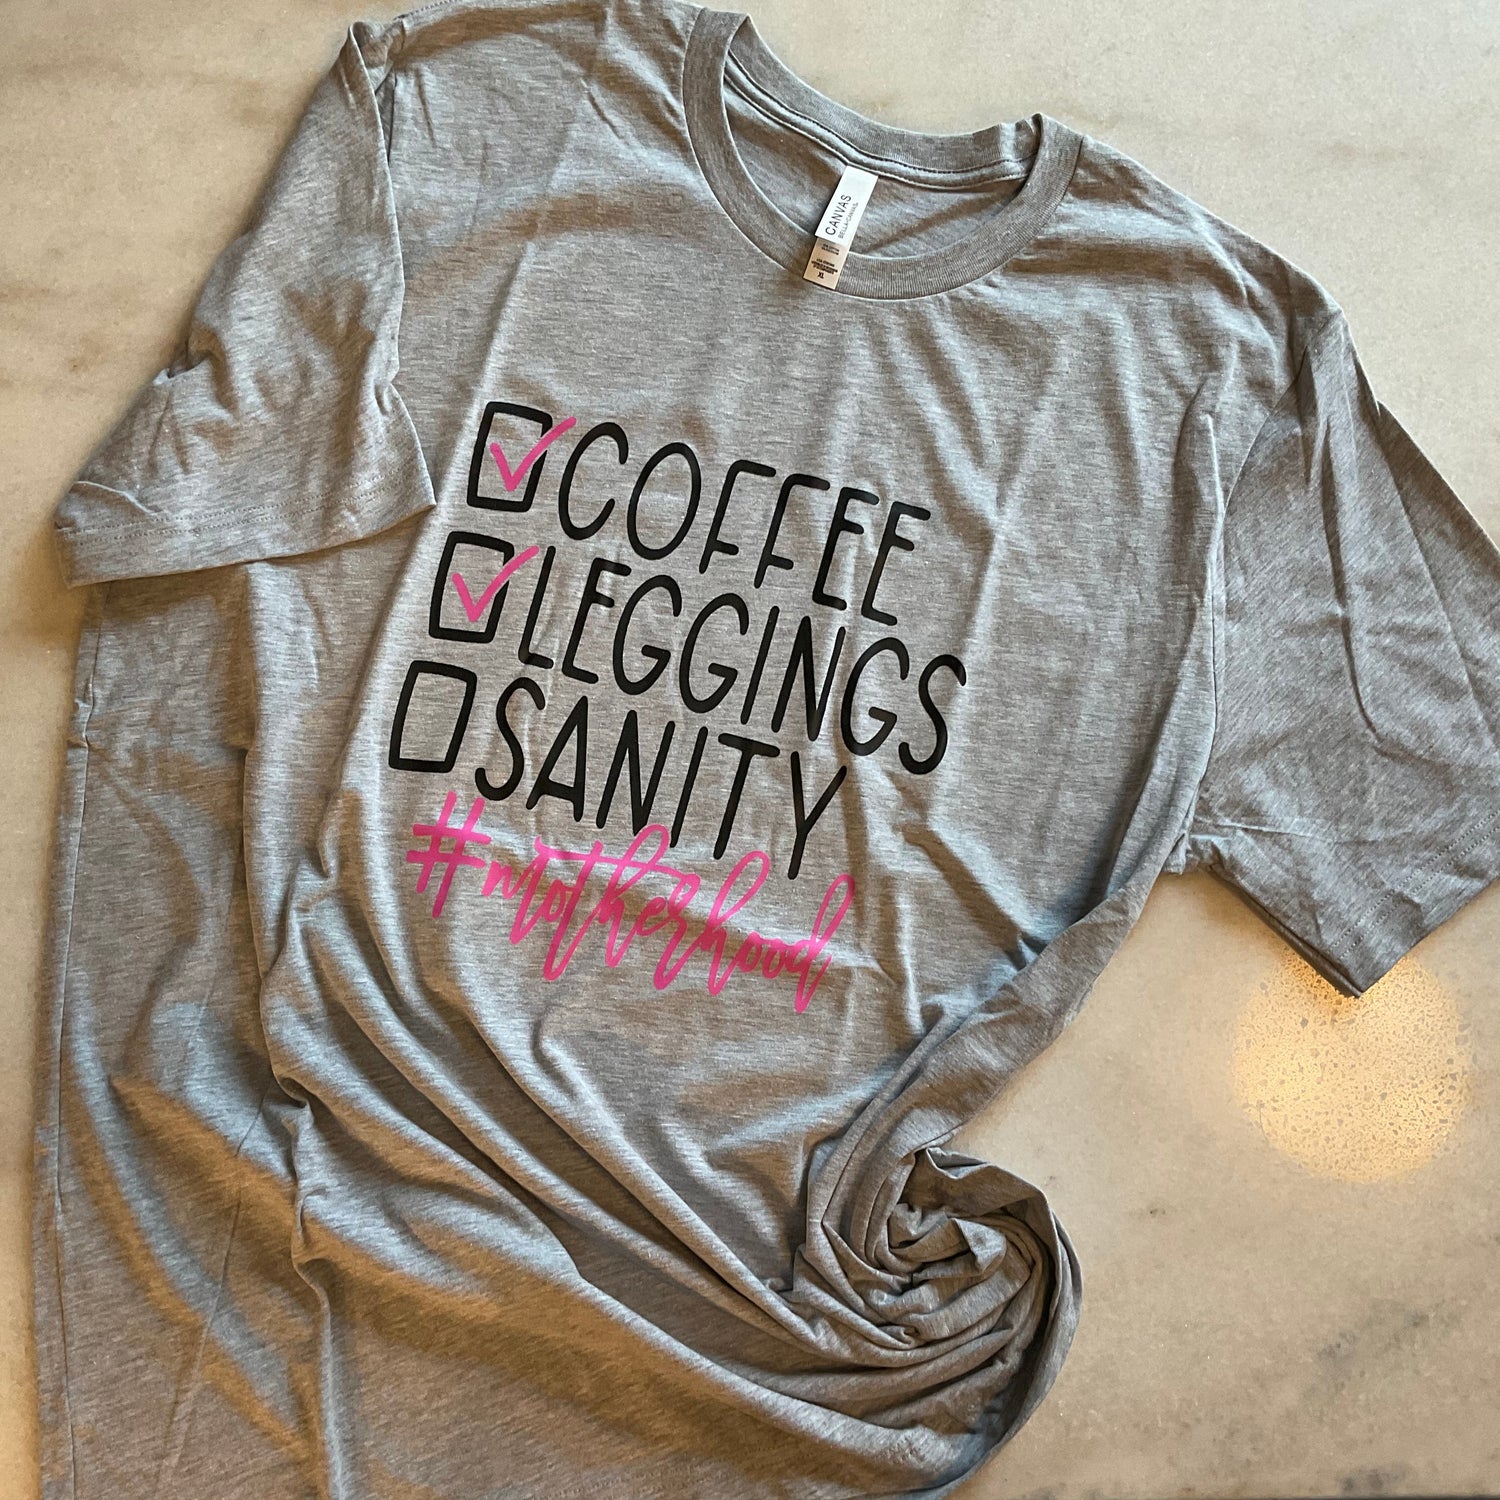 Coffee Leggings Sanity #motherhood Shirts